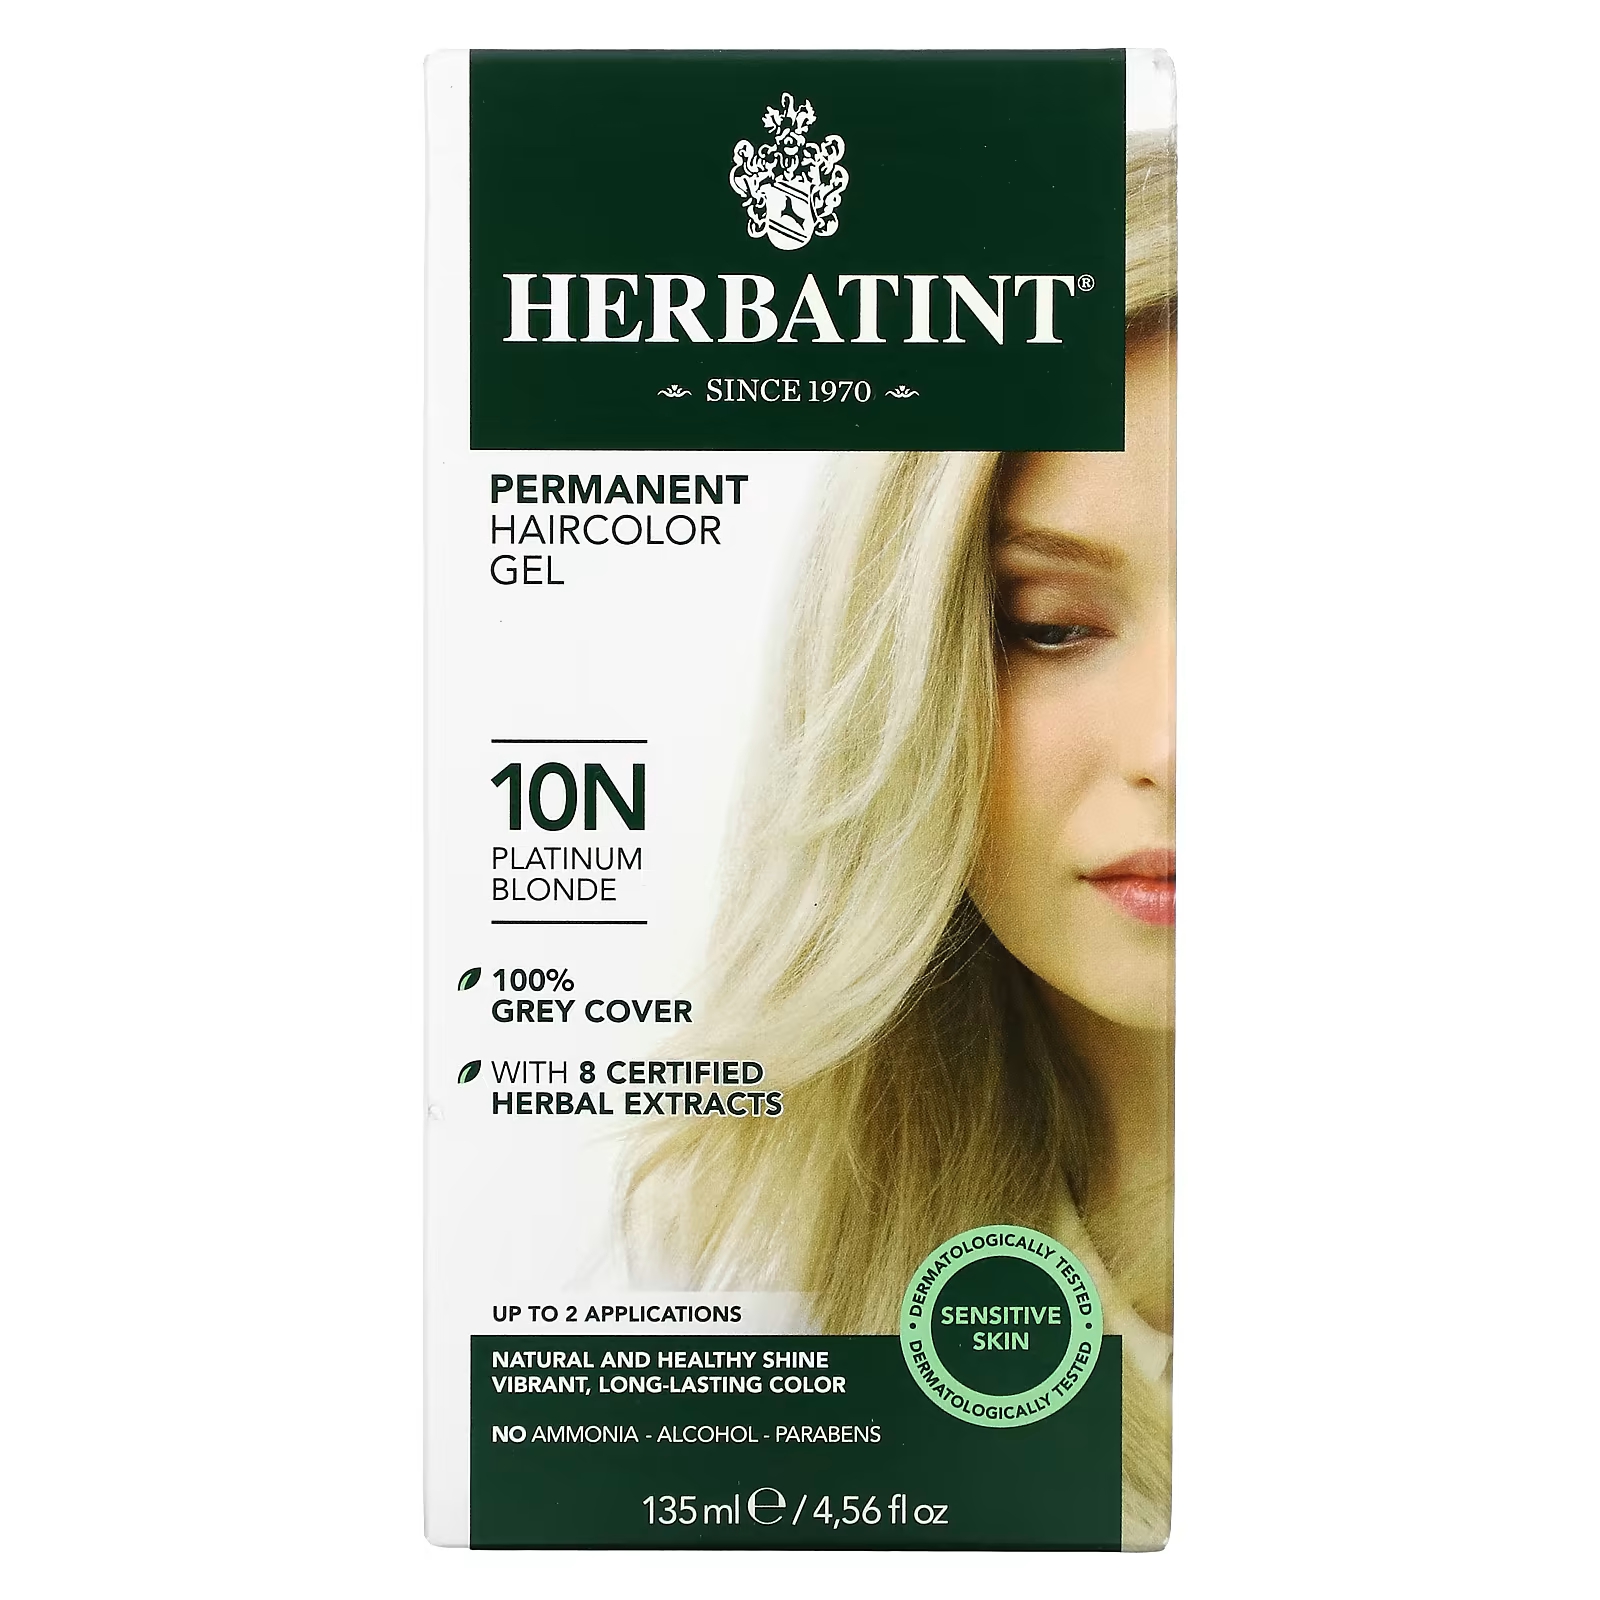 Перманентная гель-краска для волос Herbatint 10N платиновый блондин, 135 мл herbatint перманентная гель краска для волос 6d темный золотой блондин 135 мл